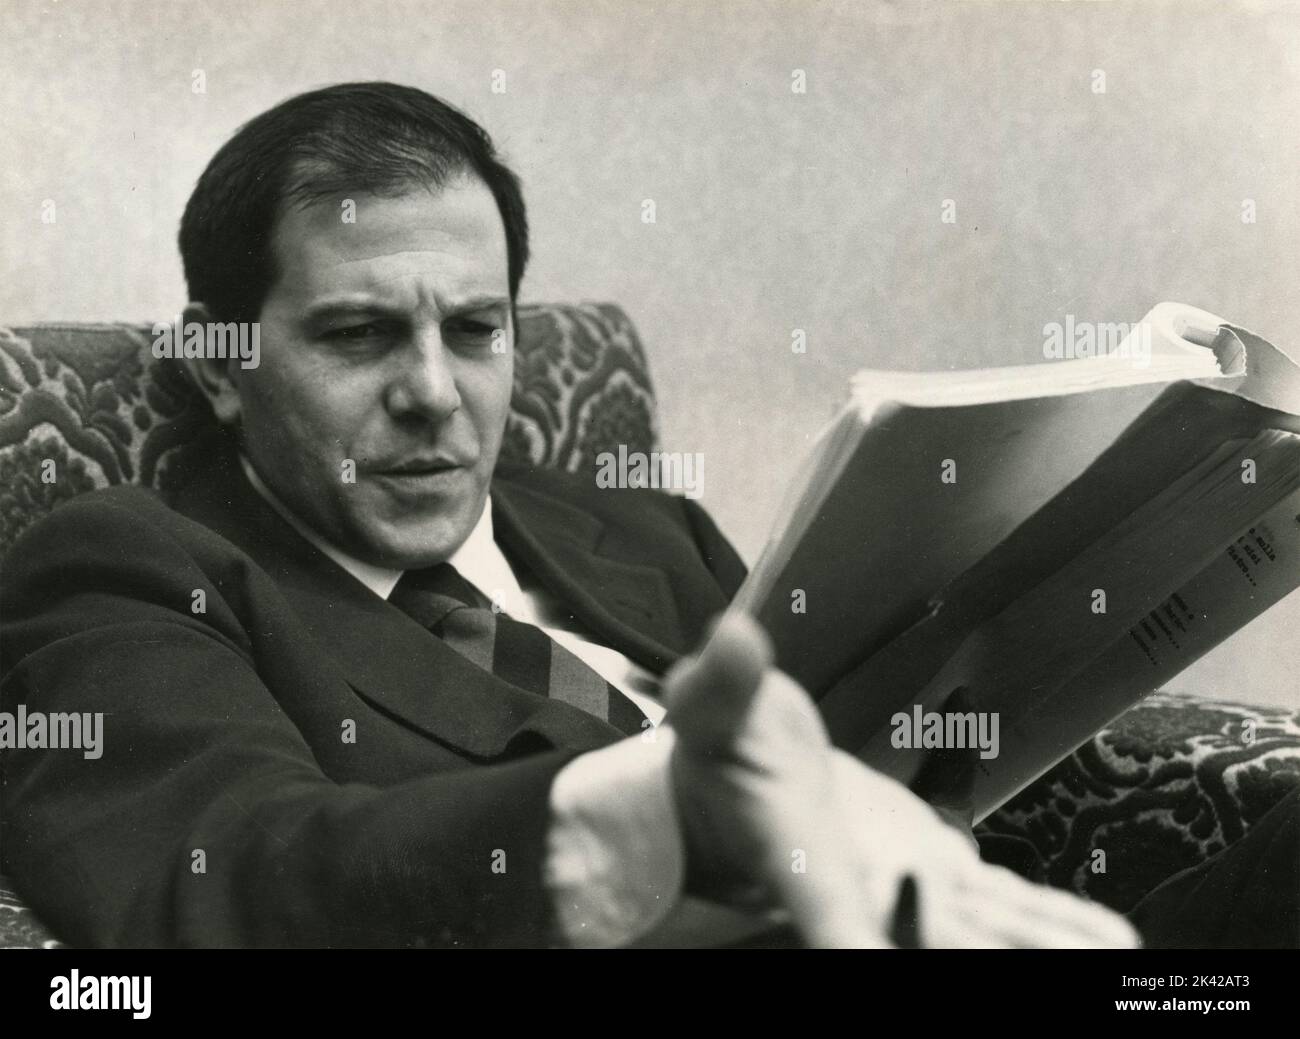 L'acteur italien Enrico Maria Salerno lisant le script, Italie 1950s Banque D'Images